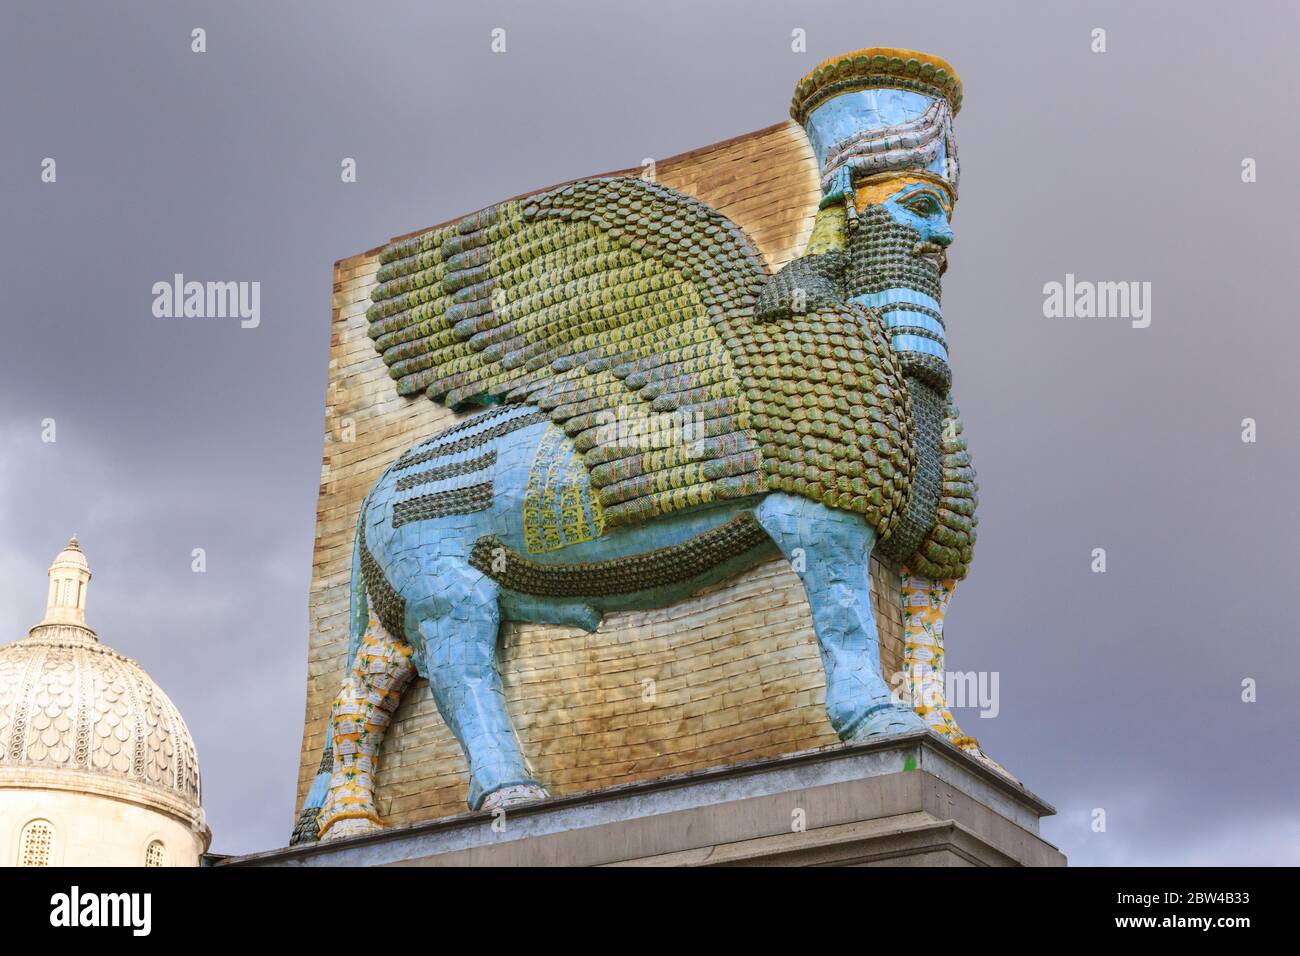 Statue de « l'ennemi invisible ne doit pas exister » et recréation de la bête mythique par Michael Rafowitz sur le quatrième Plinth de Trafalgar Square, Londres, Royaume-Uni Banque D'Images